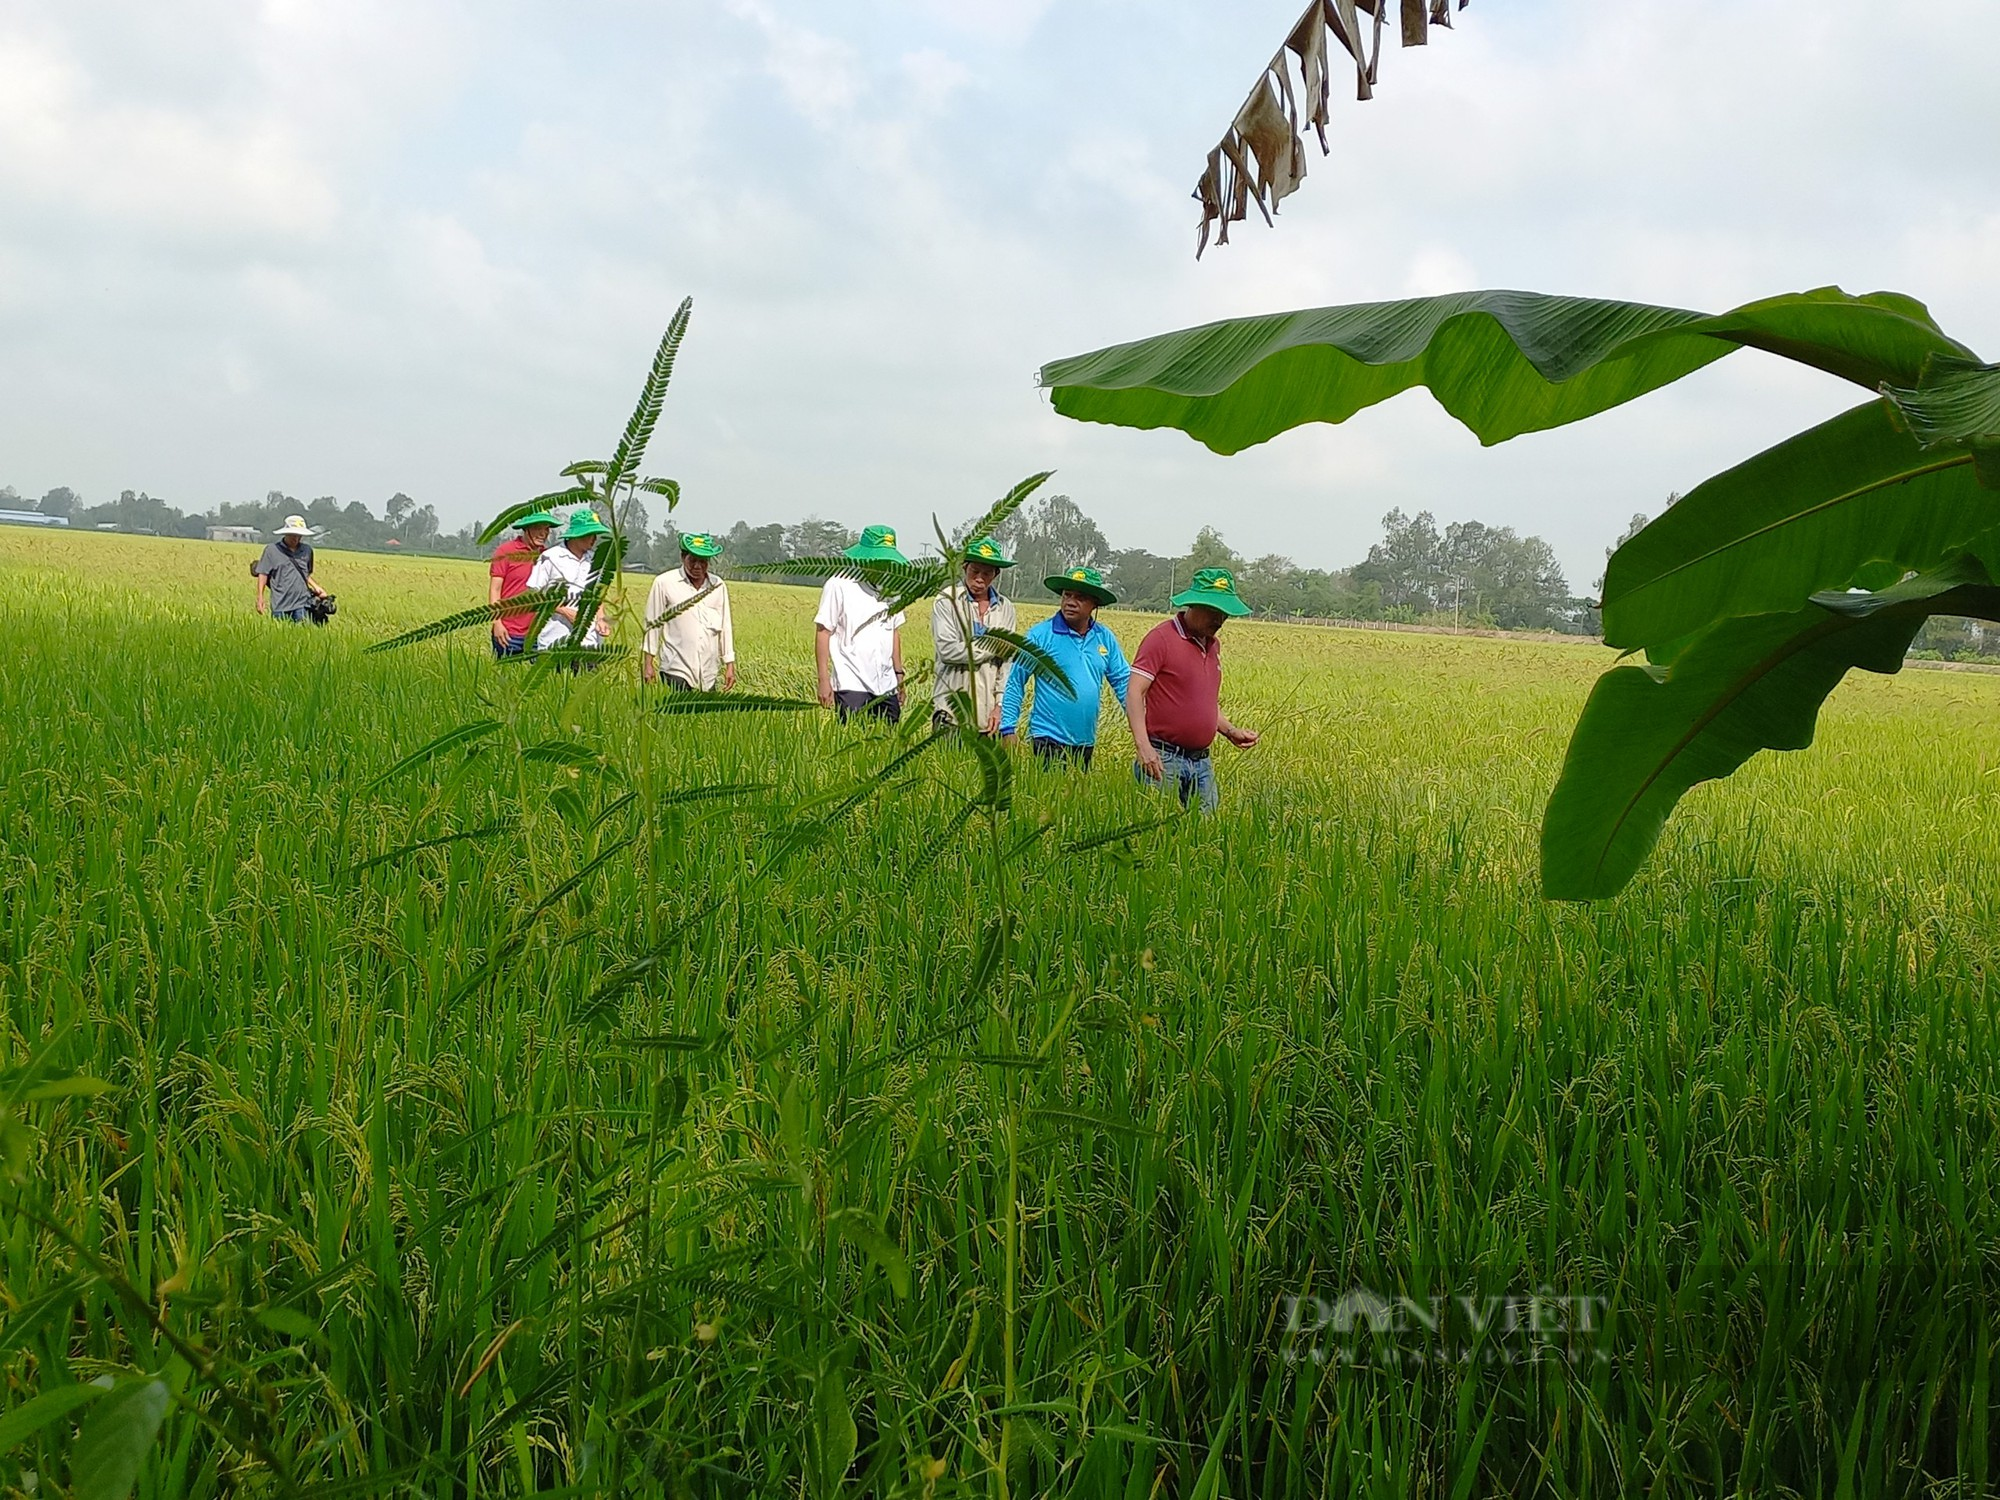 Giảm 50% lượng phân bón, nông dân trồng lúa ở ĐBSCL vẫn thu hoạch mỏi tay - Ảnh 5.